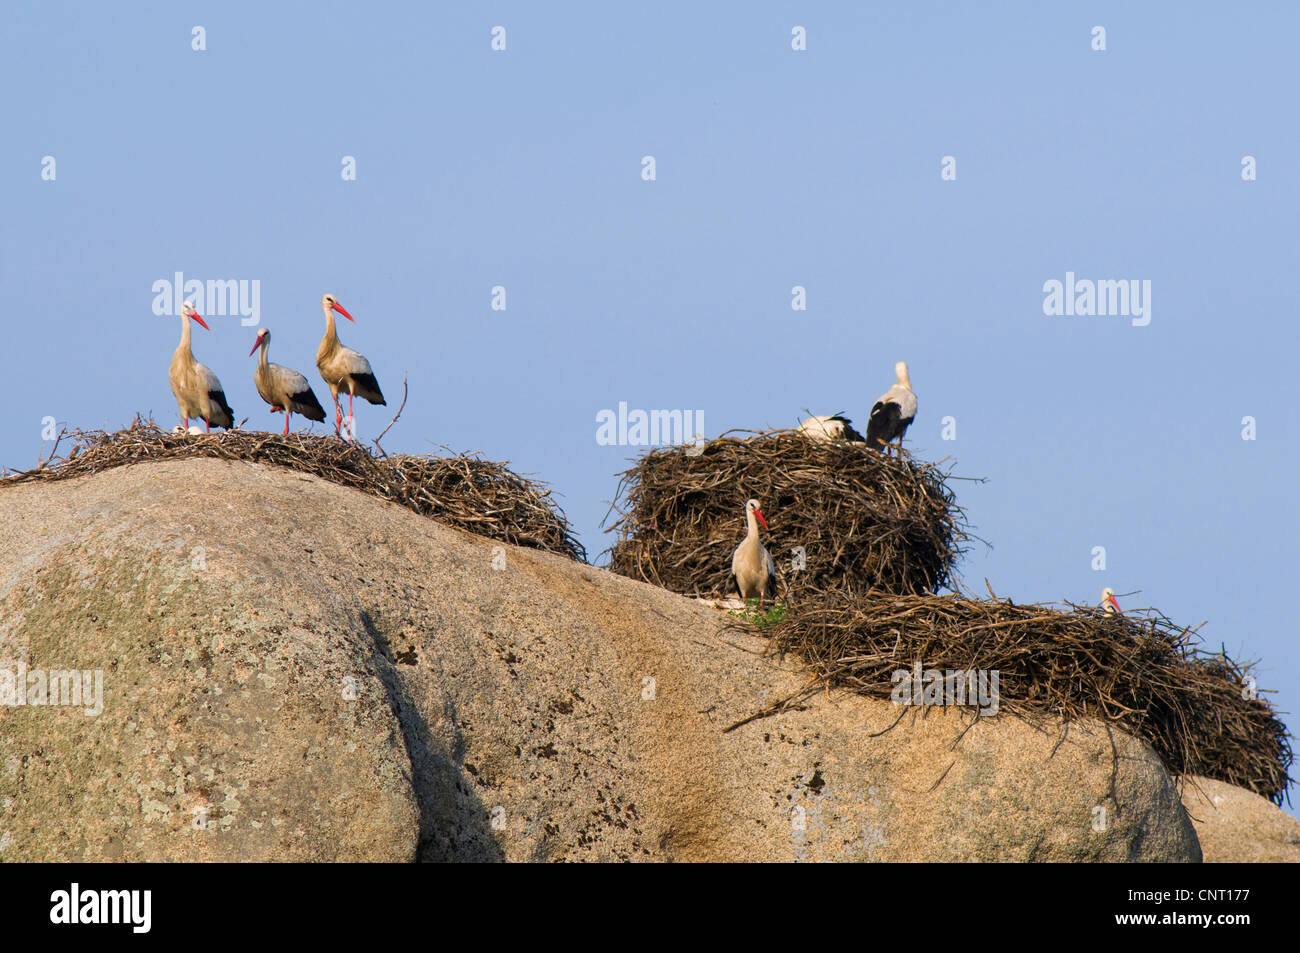 Cicogna bianca (Ciconia ciconia), storck nidifica sulle rocce di los Barruecos, Spagna Estremadura, Laguna del Lavadero, los Barruecos, Malpartida De Caceres Foto Stock